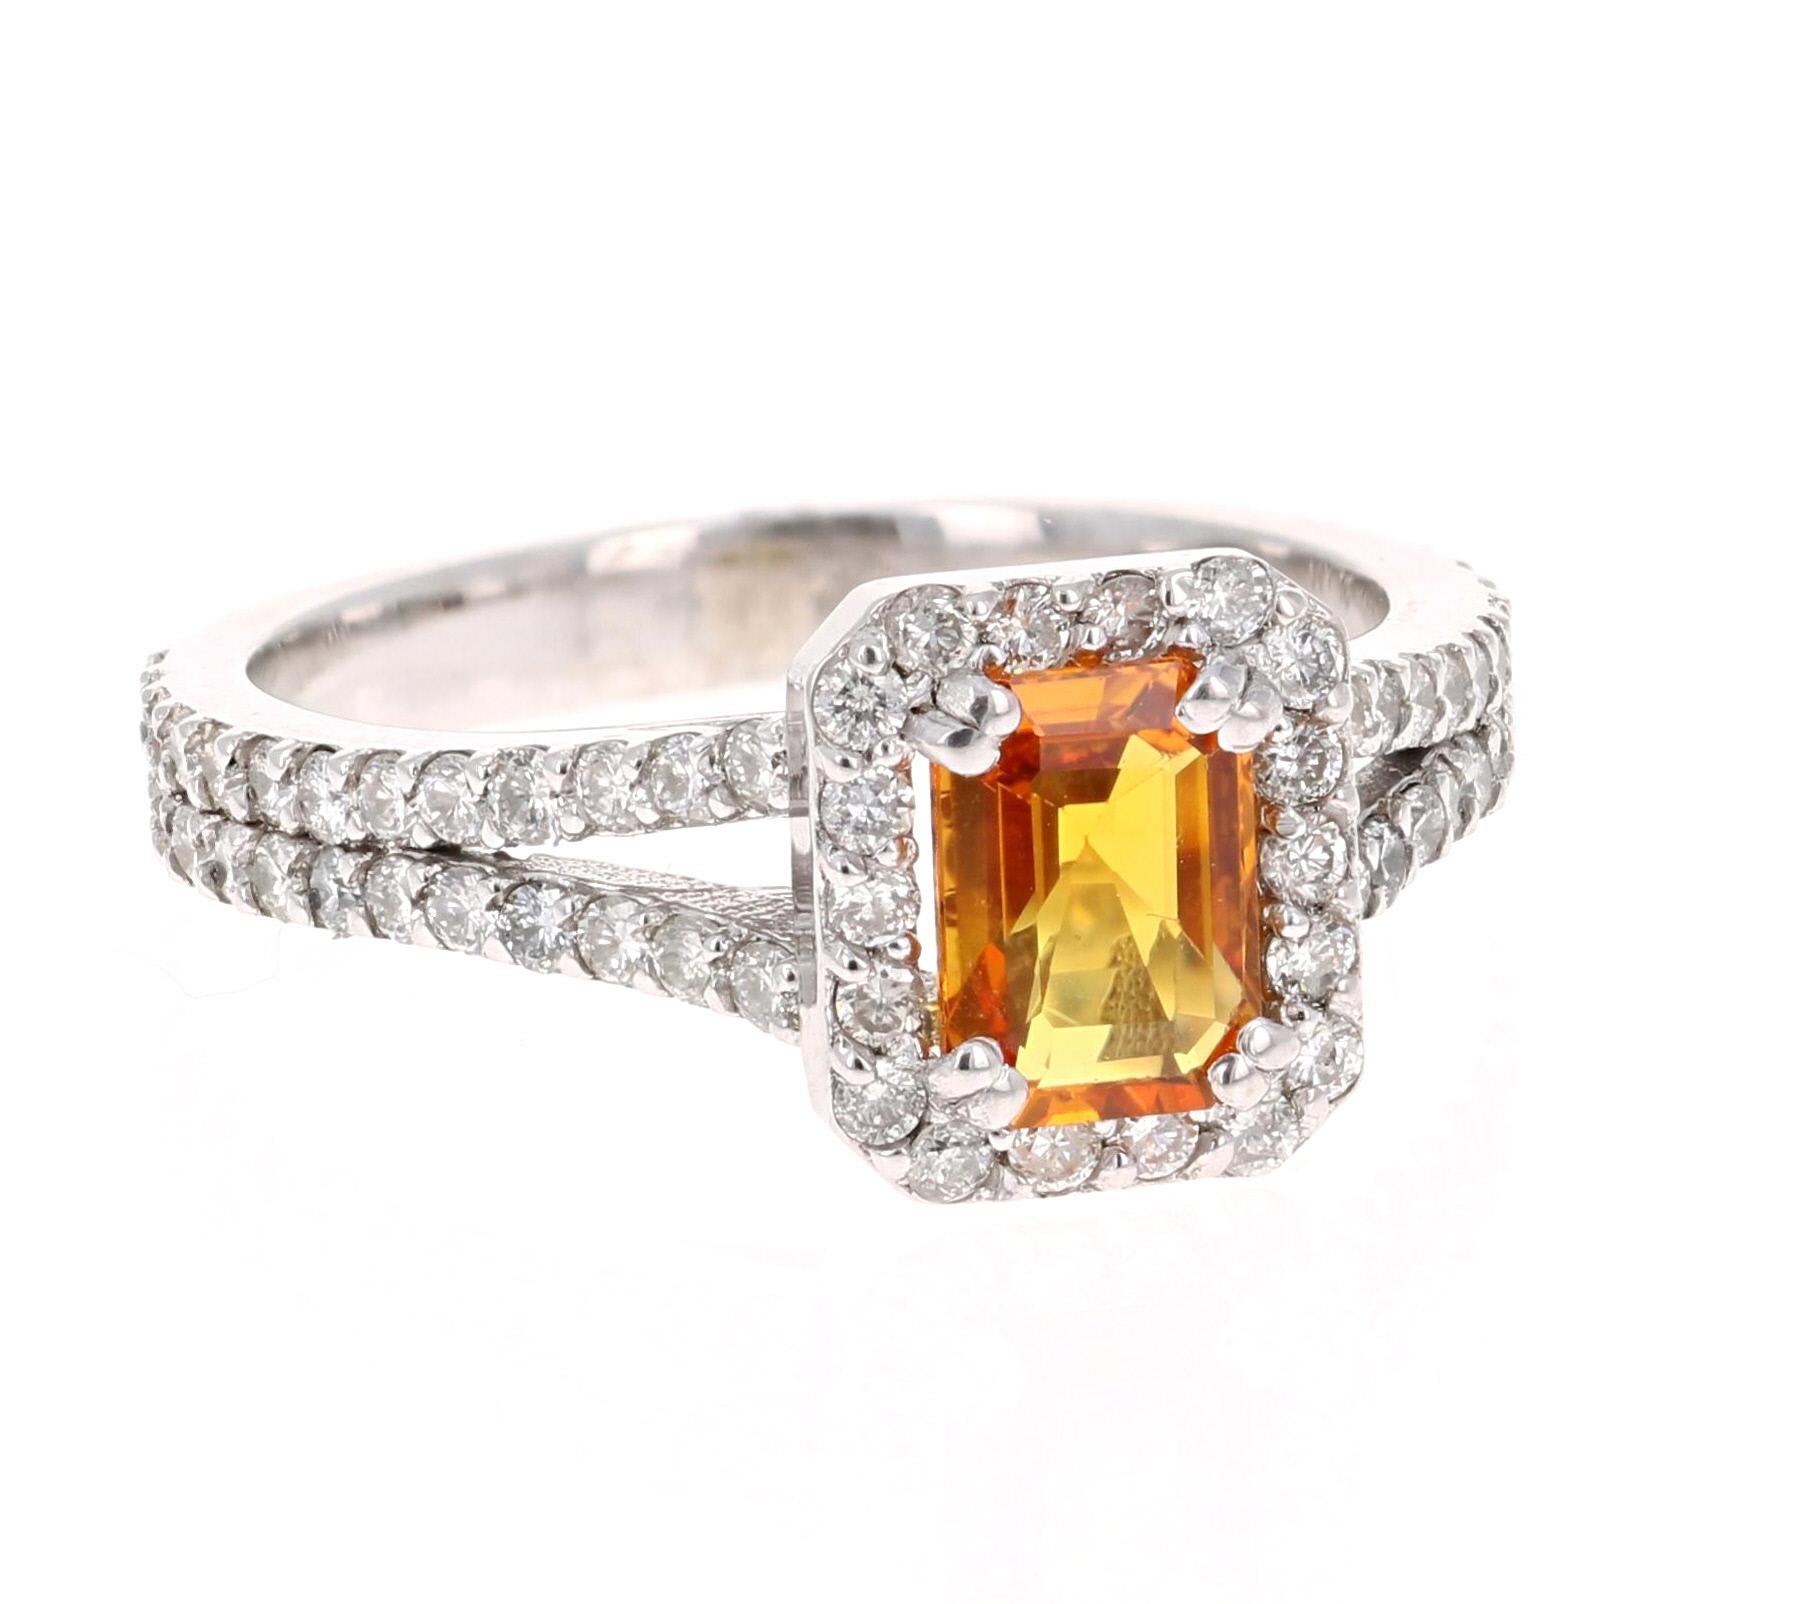 Ein wunderschöner Ring mit orangefarbenem Saphir und Diamant in Weißgold. Es kann der schönste und einzigartigste Verlobungsring sein. 
Der orangefarbene Saphir im Smaragdschliff hat 1,12 Karat und ist von 70 Diamanten im Rundschliff mit einem